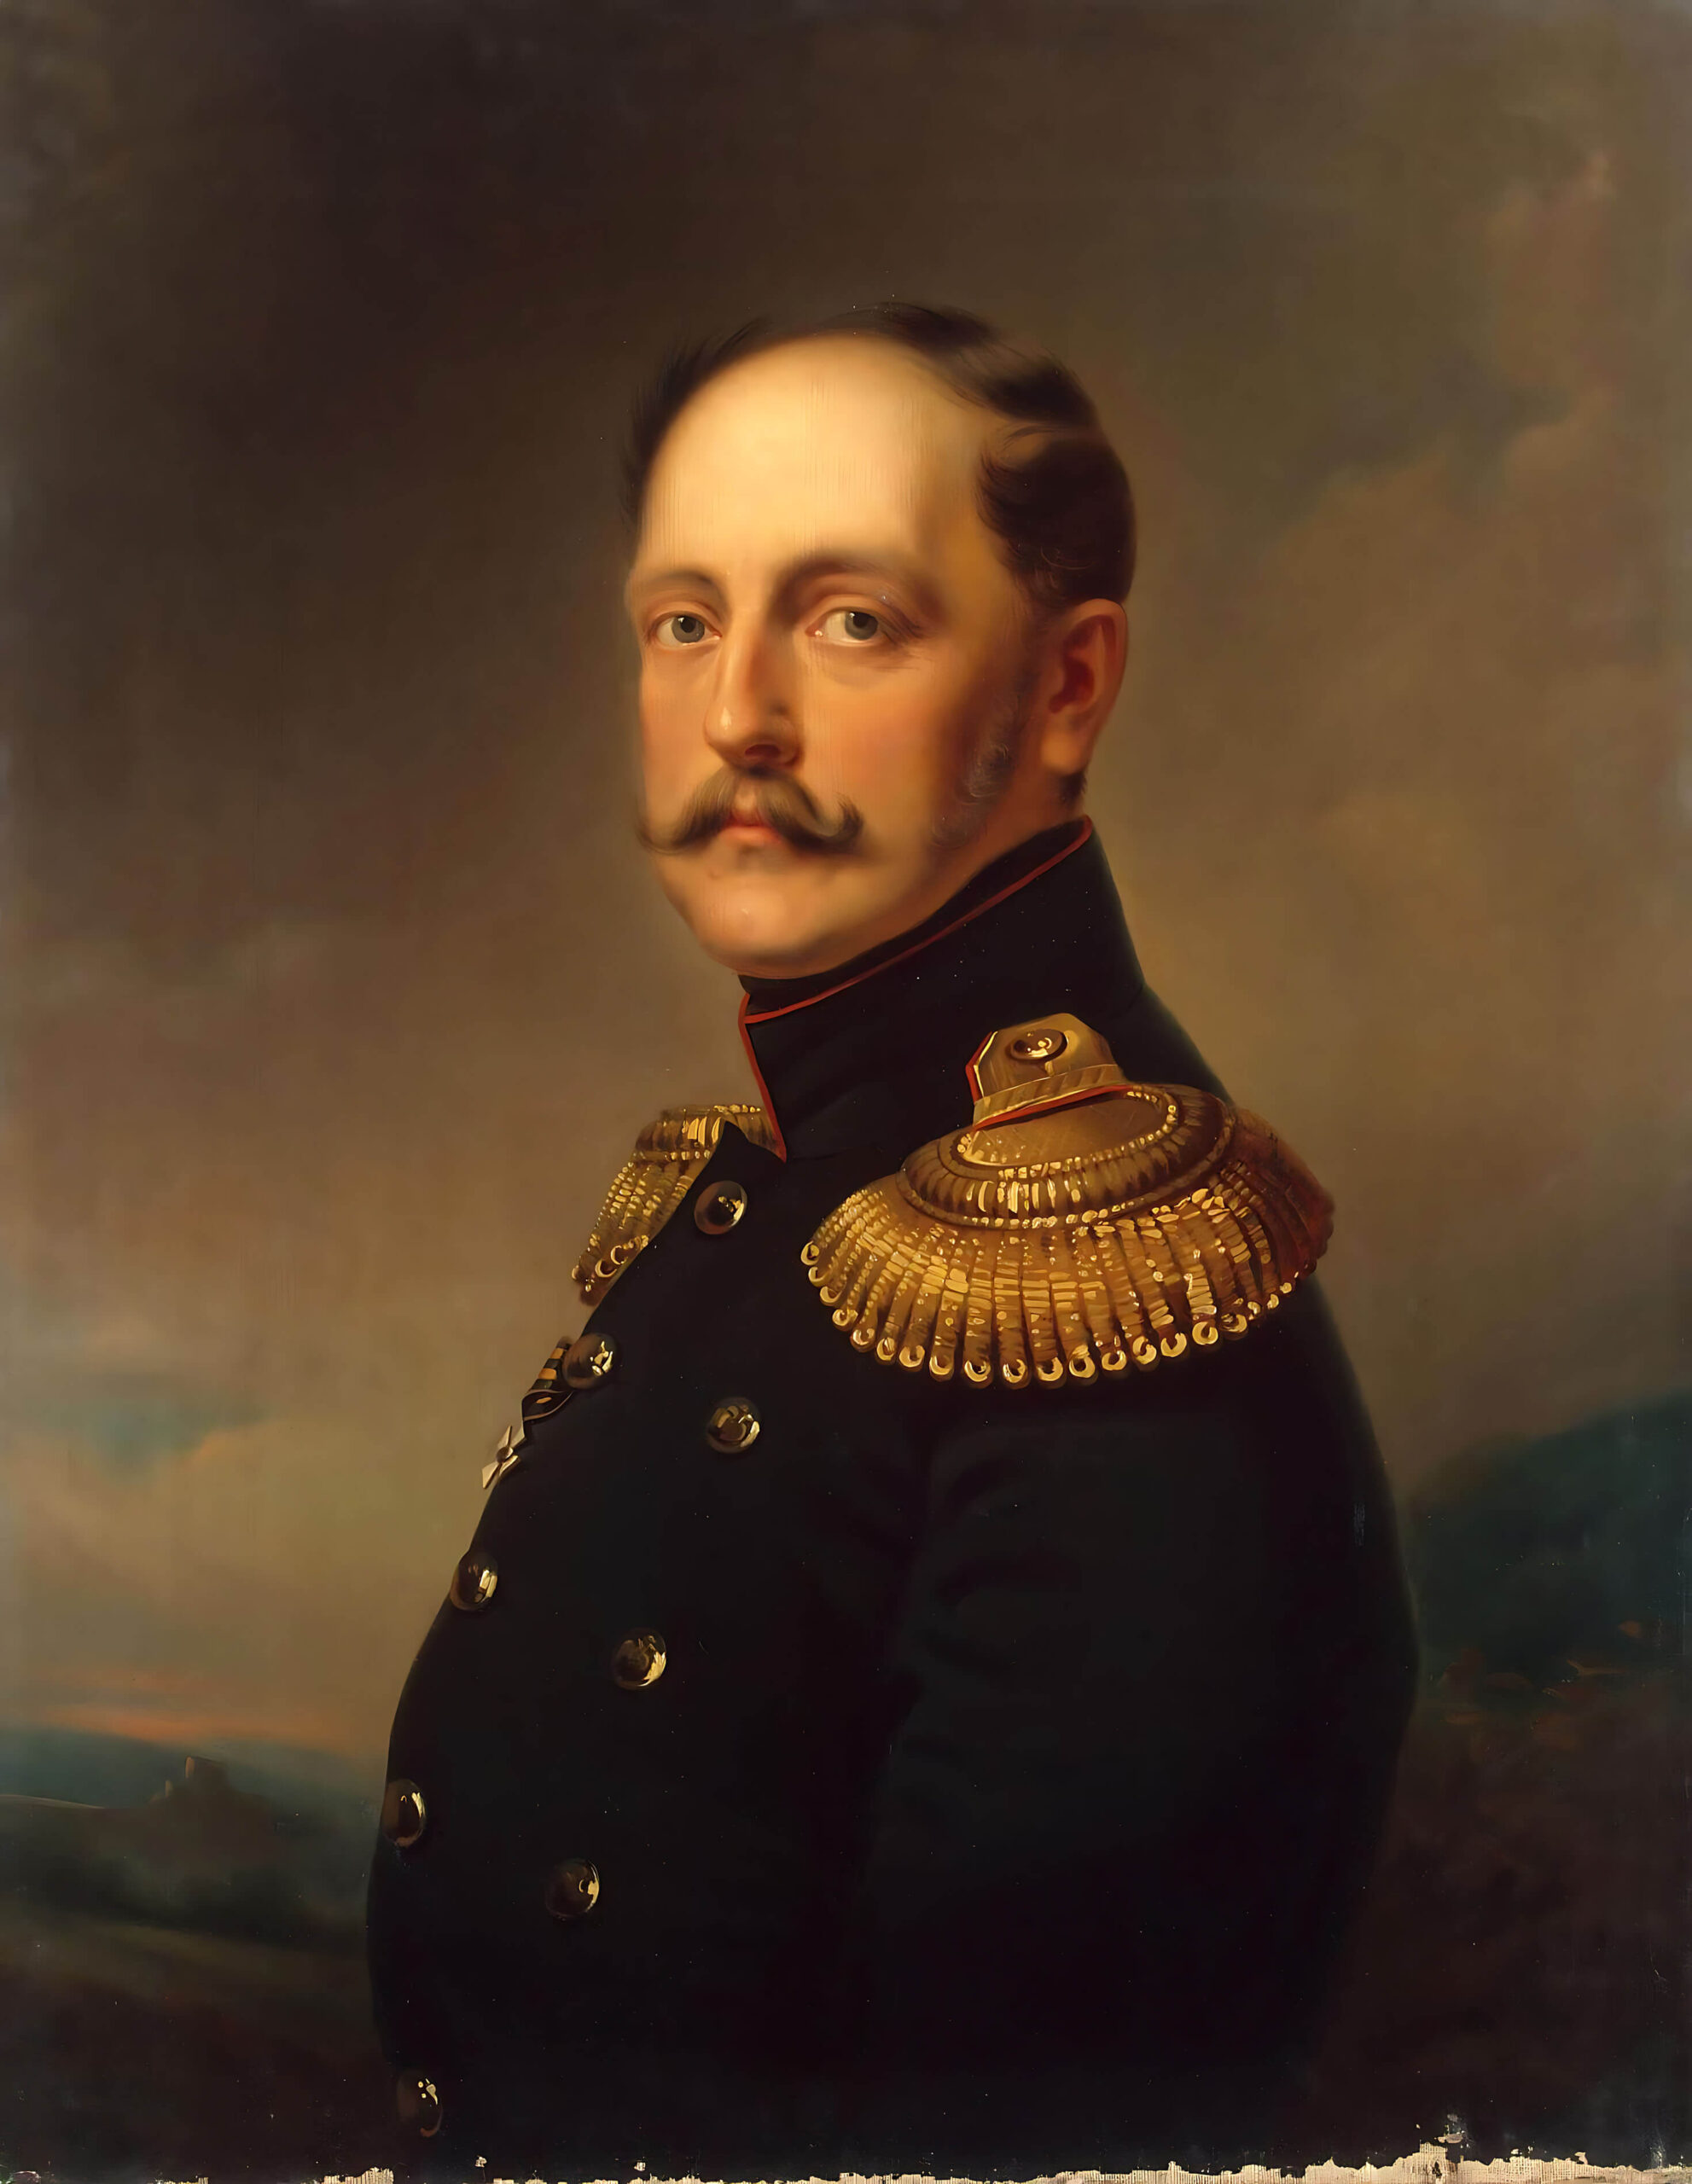 Ботман Е.И. "Портрет императора Николая I"